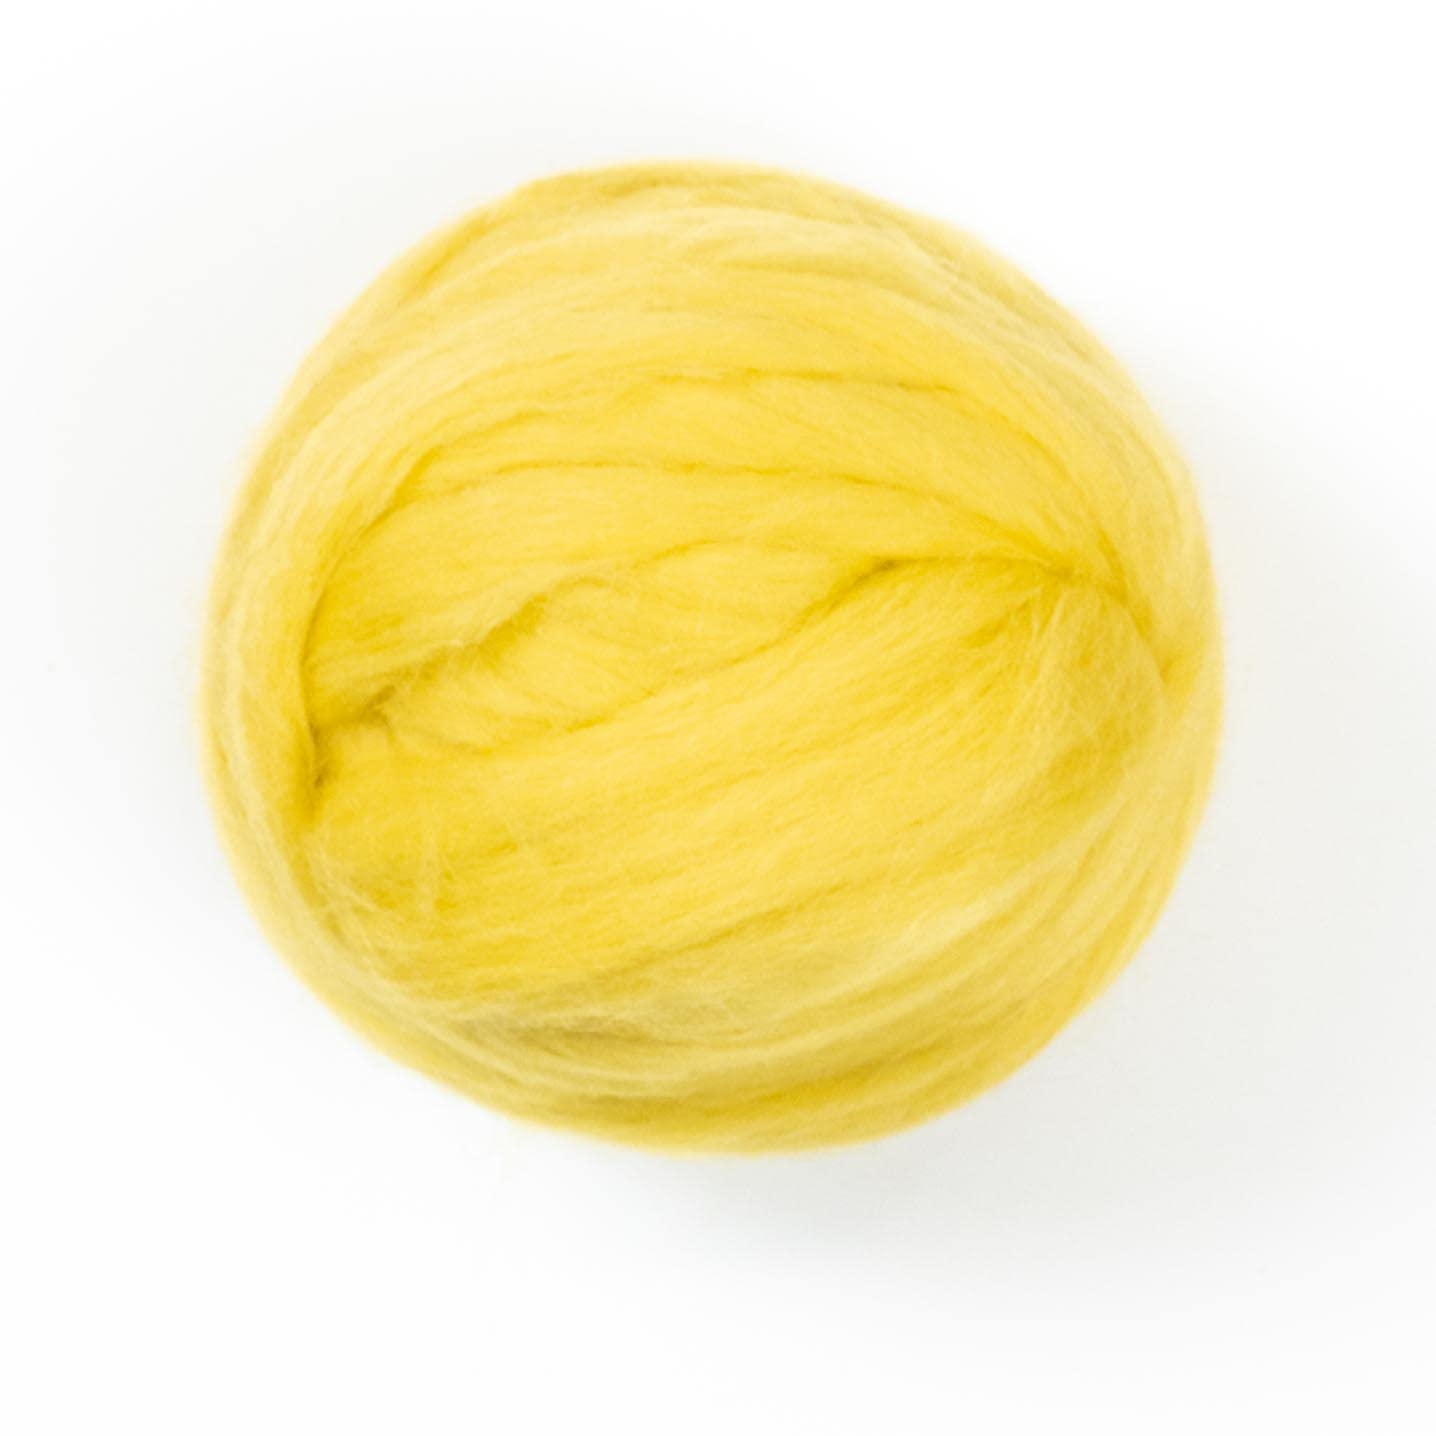 Spinning Fiber Into Yarn - Grit